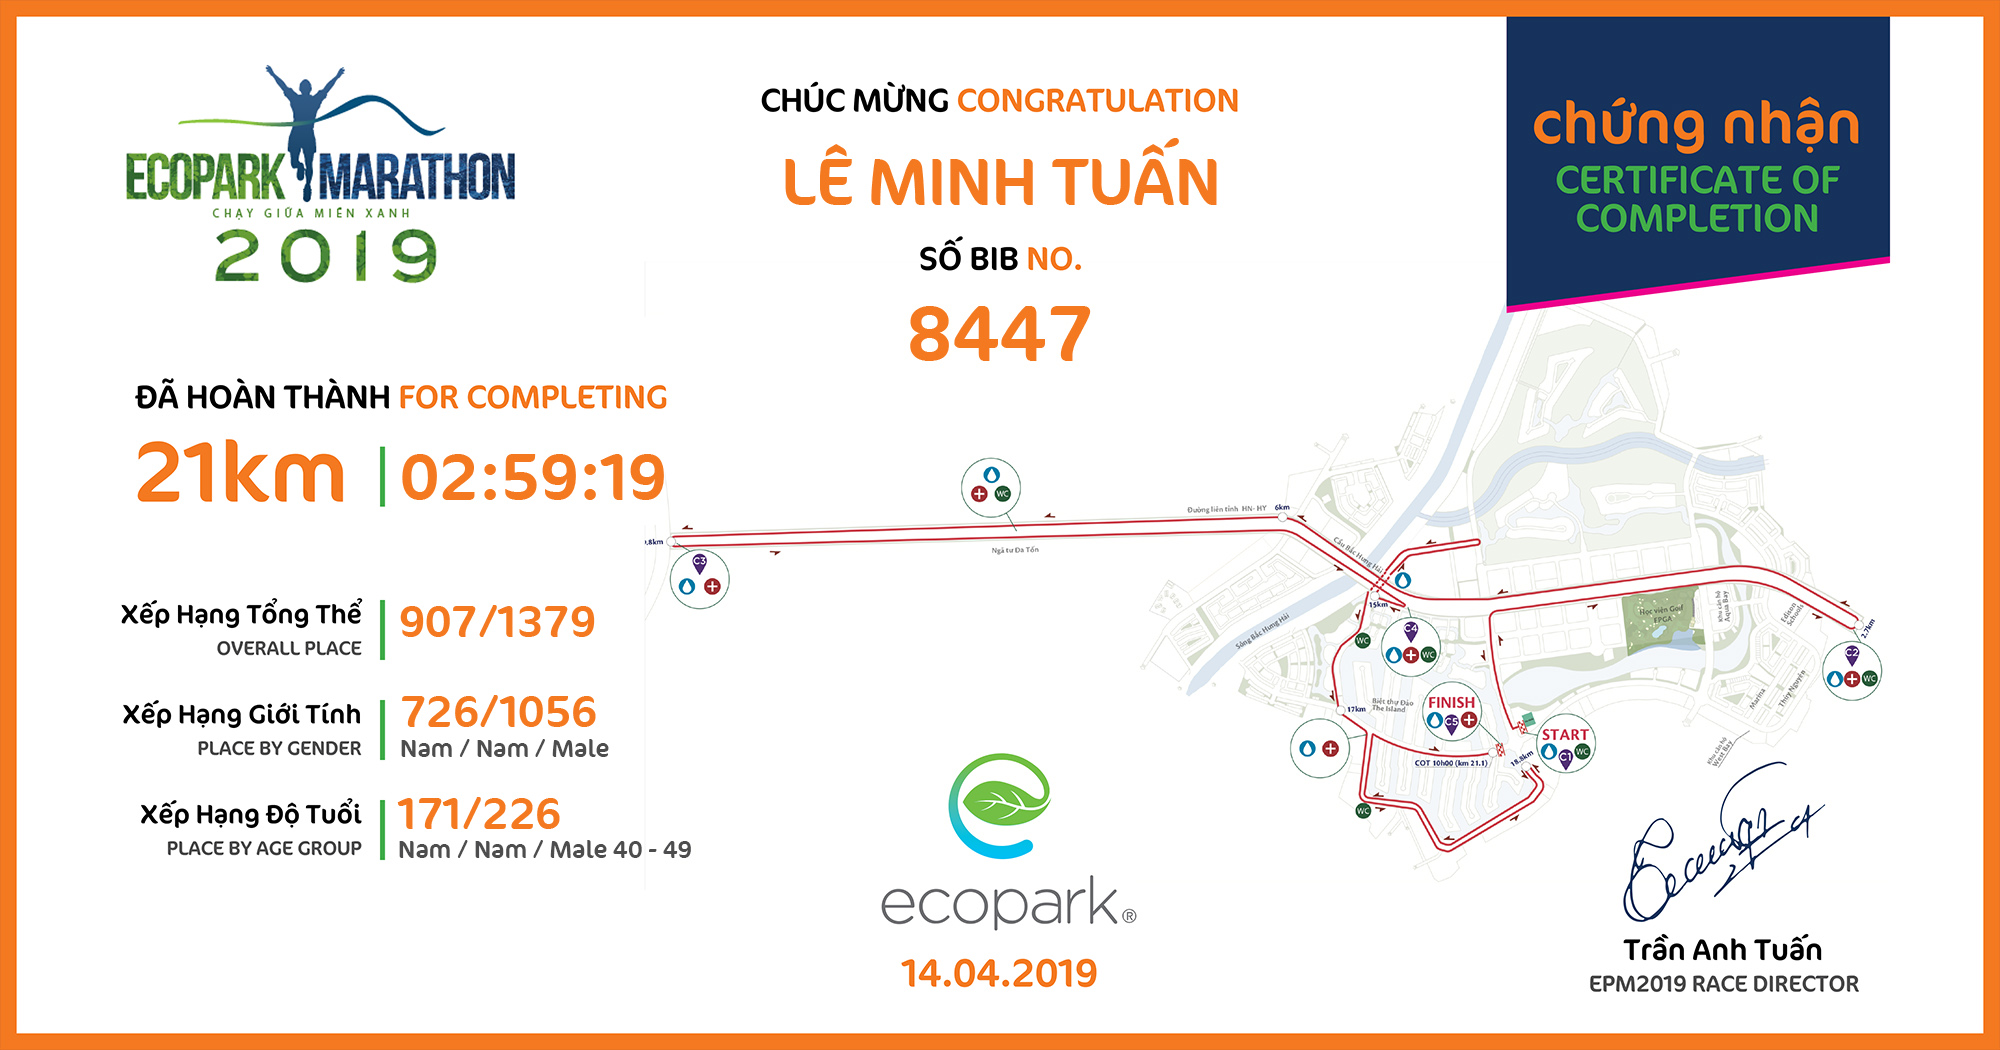 8447 - Lê Minh Tuấn